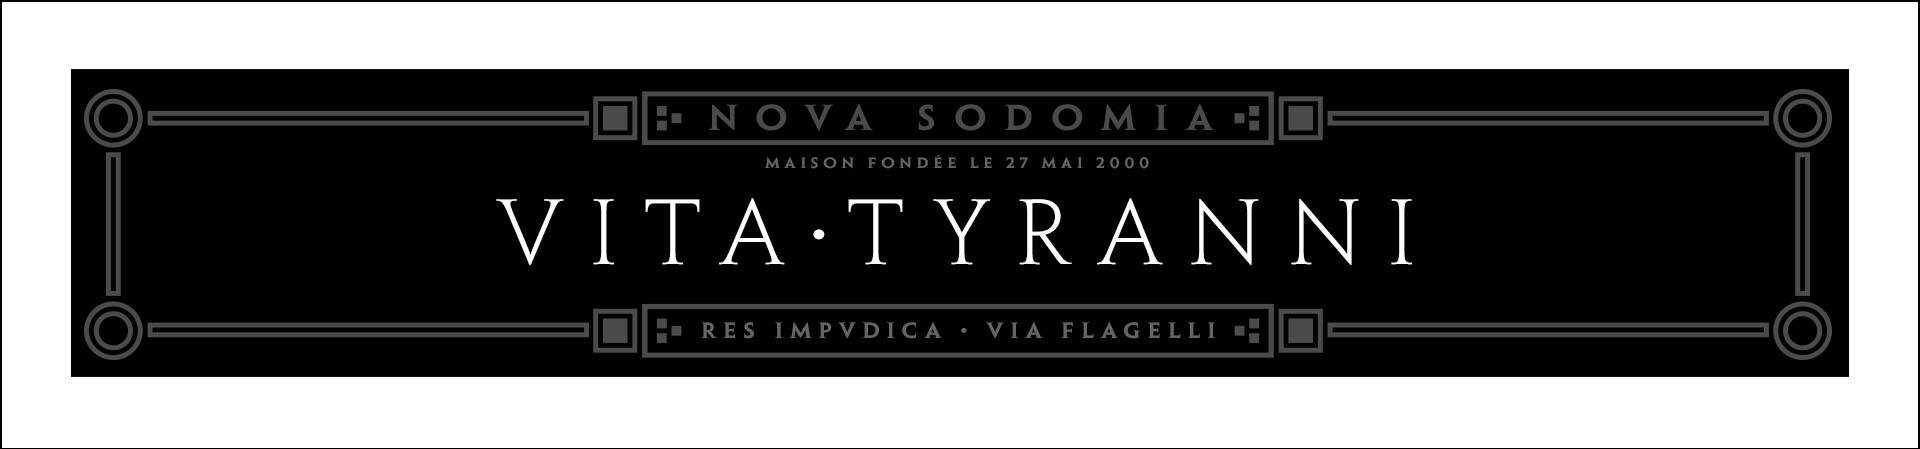 Nova Sodomia - Vita Tyranni